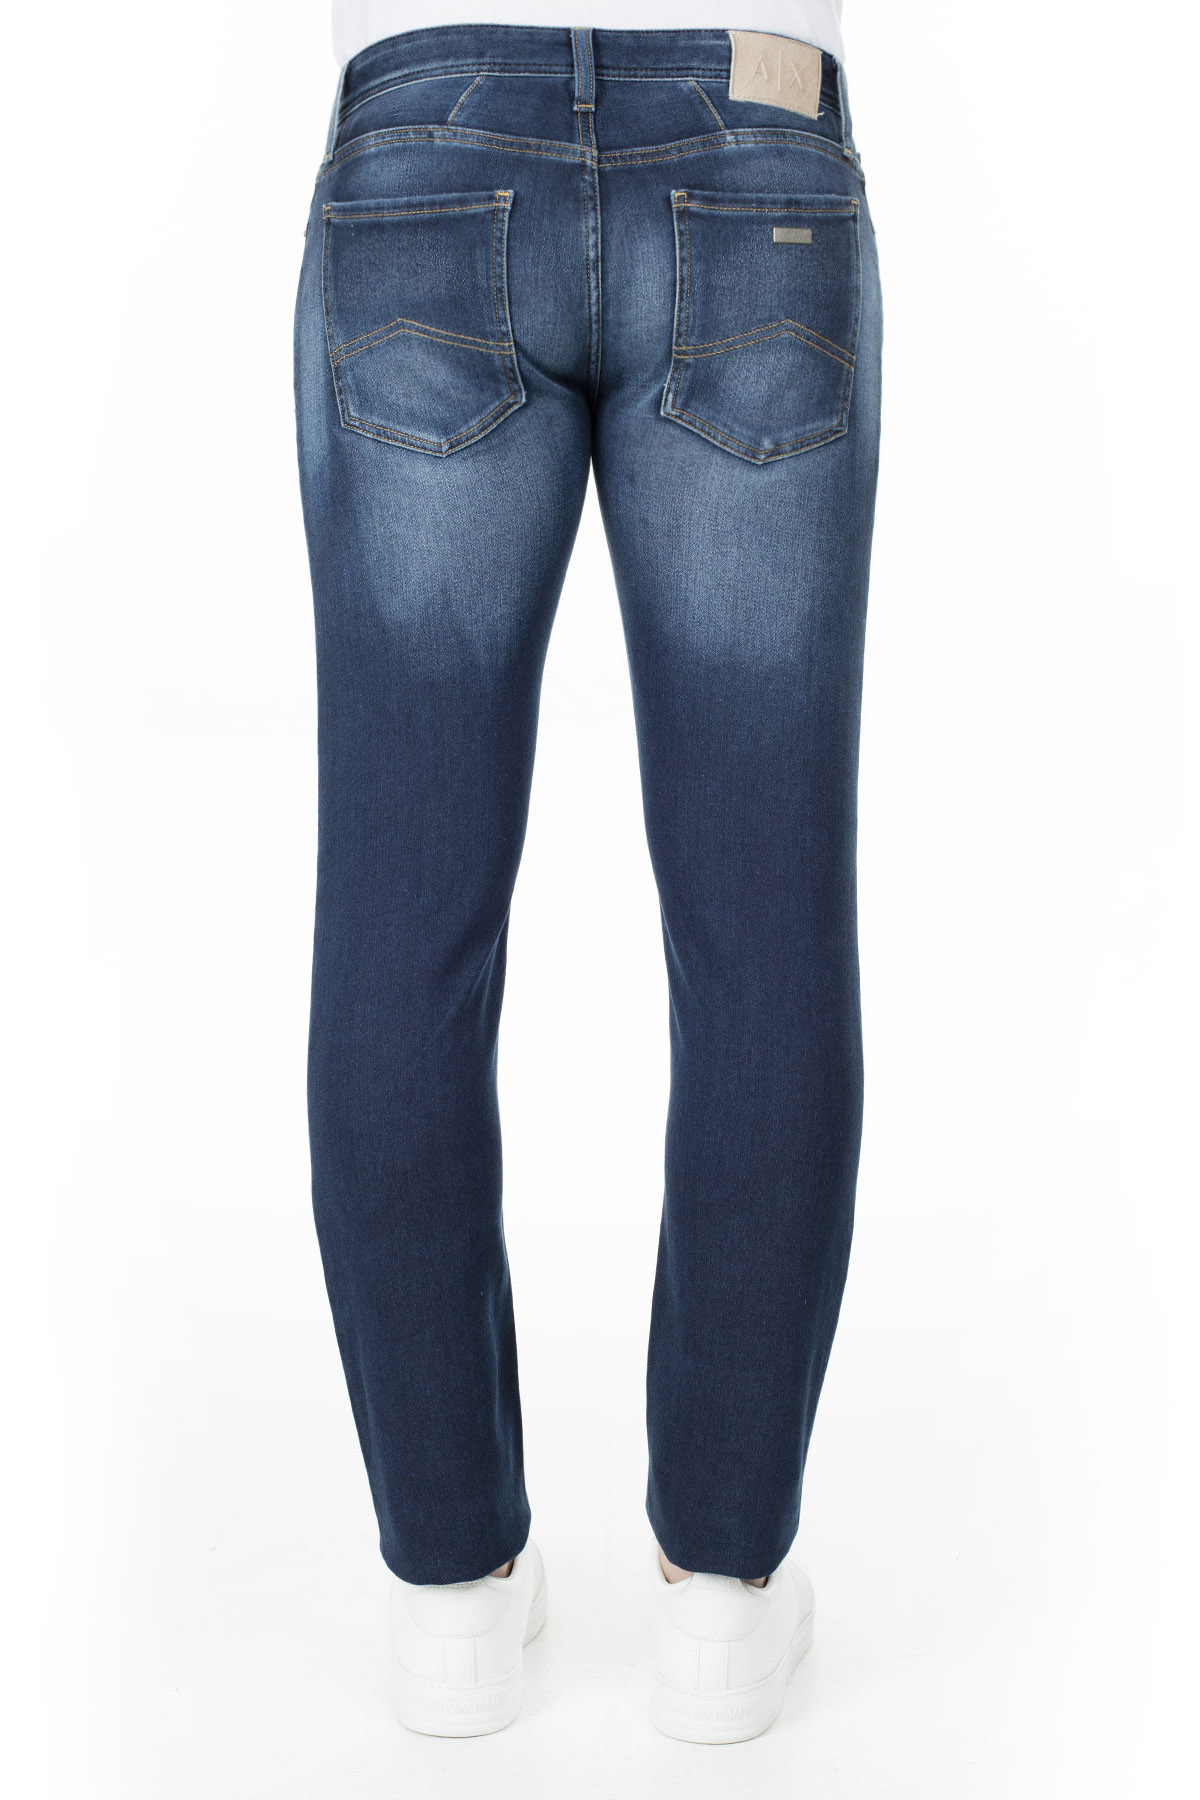 Armani Exchange J14 Jeans Erkek Kot Pantolon 3HZJ14 Z4QMZ 1500 LACİVERT